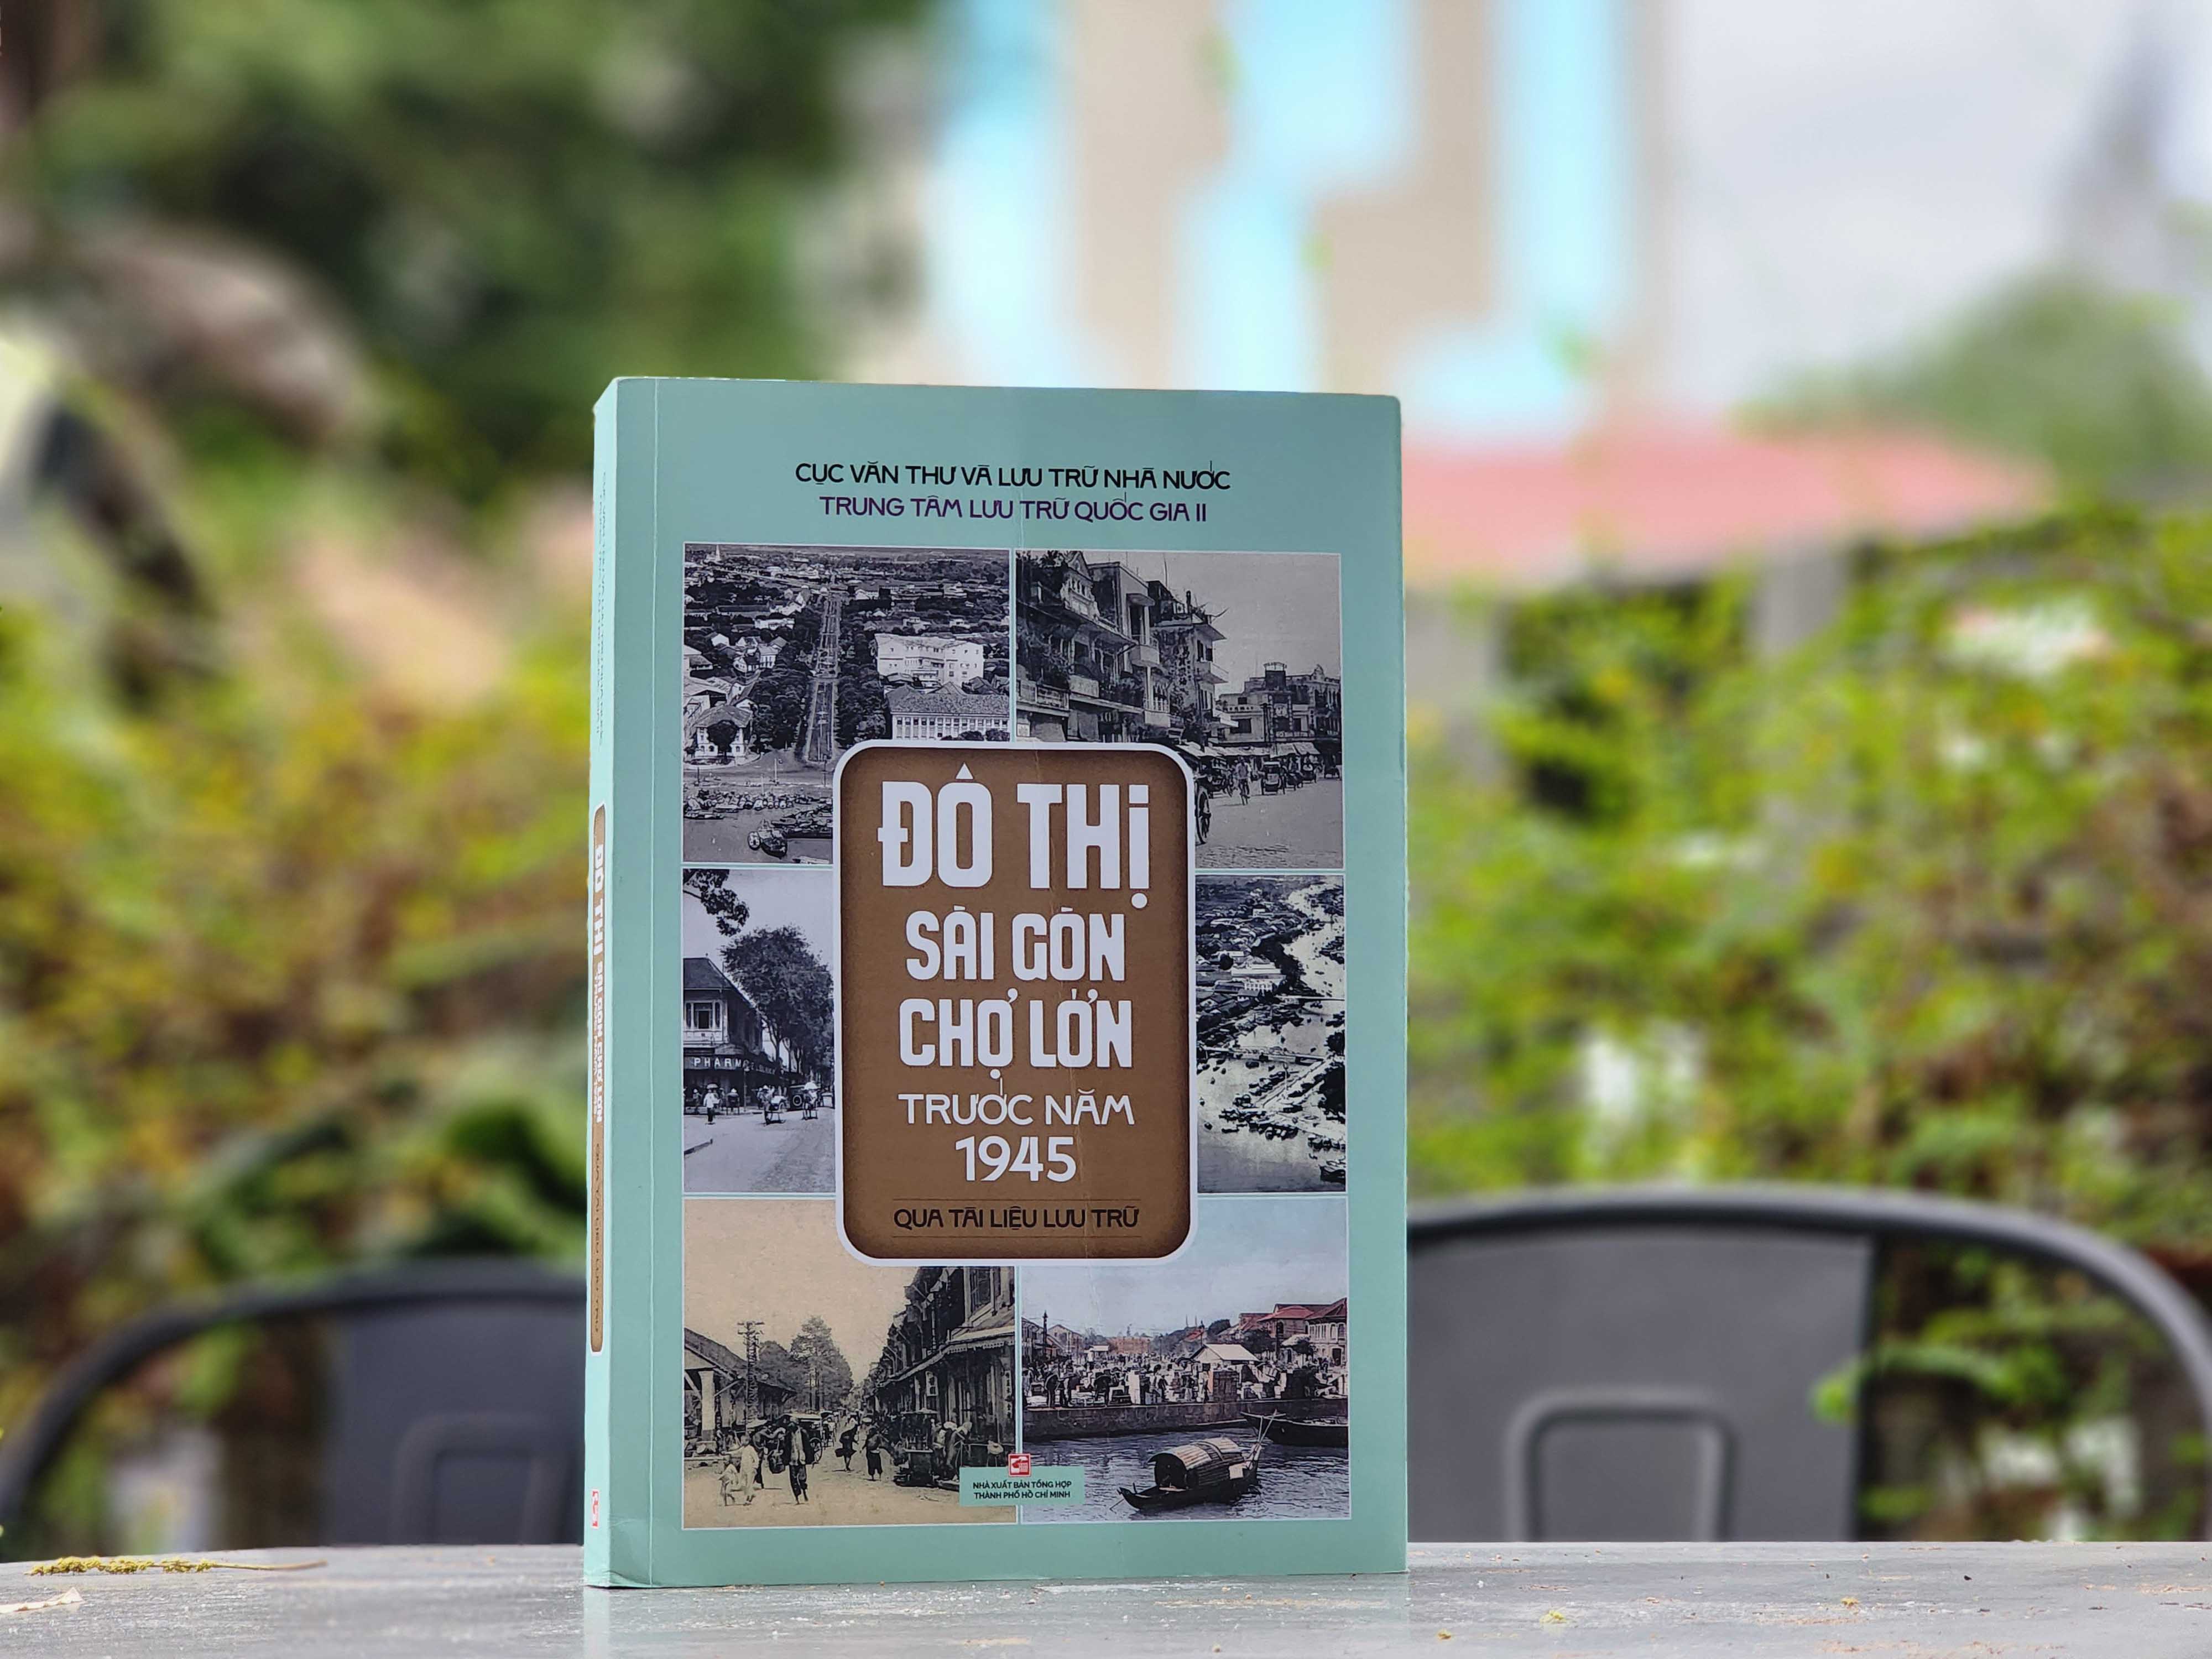 Quá trình đô thị hóa của Sài Gòn – Chợ Lớn từ sơ khởi đến thời kỳ Pháp thuộc - 1